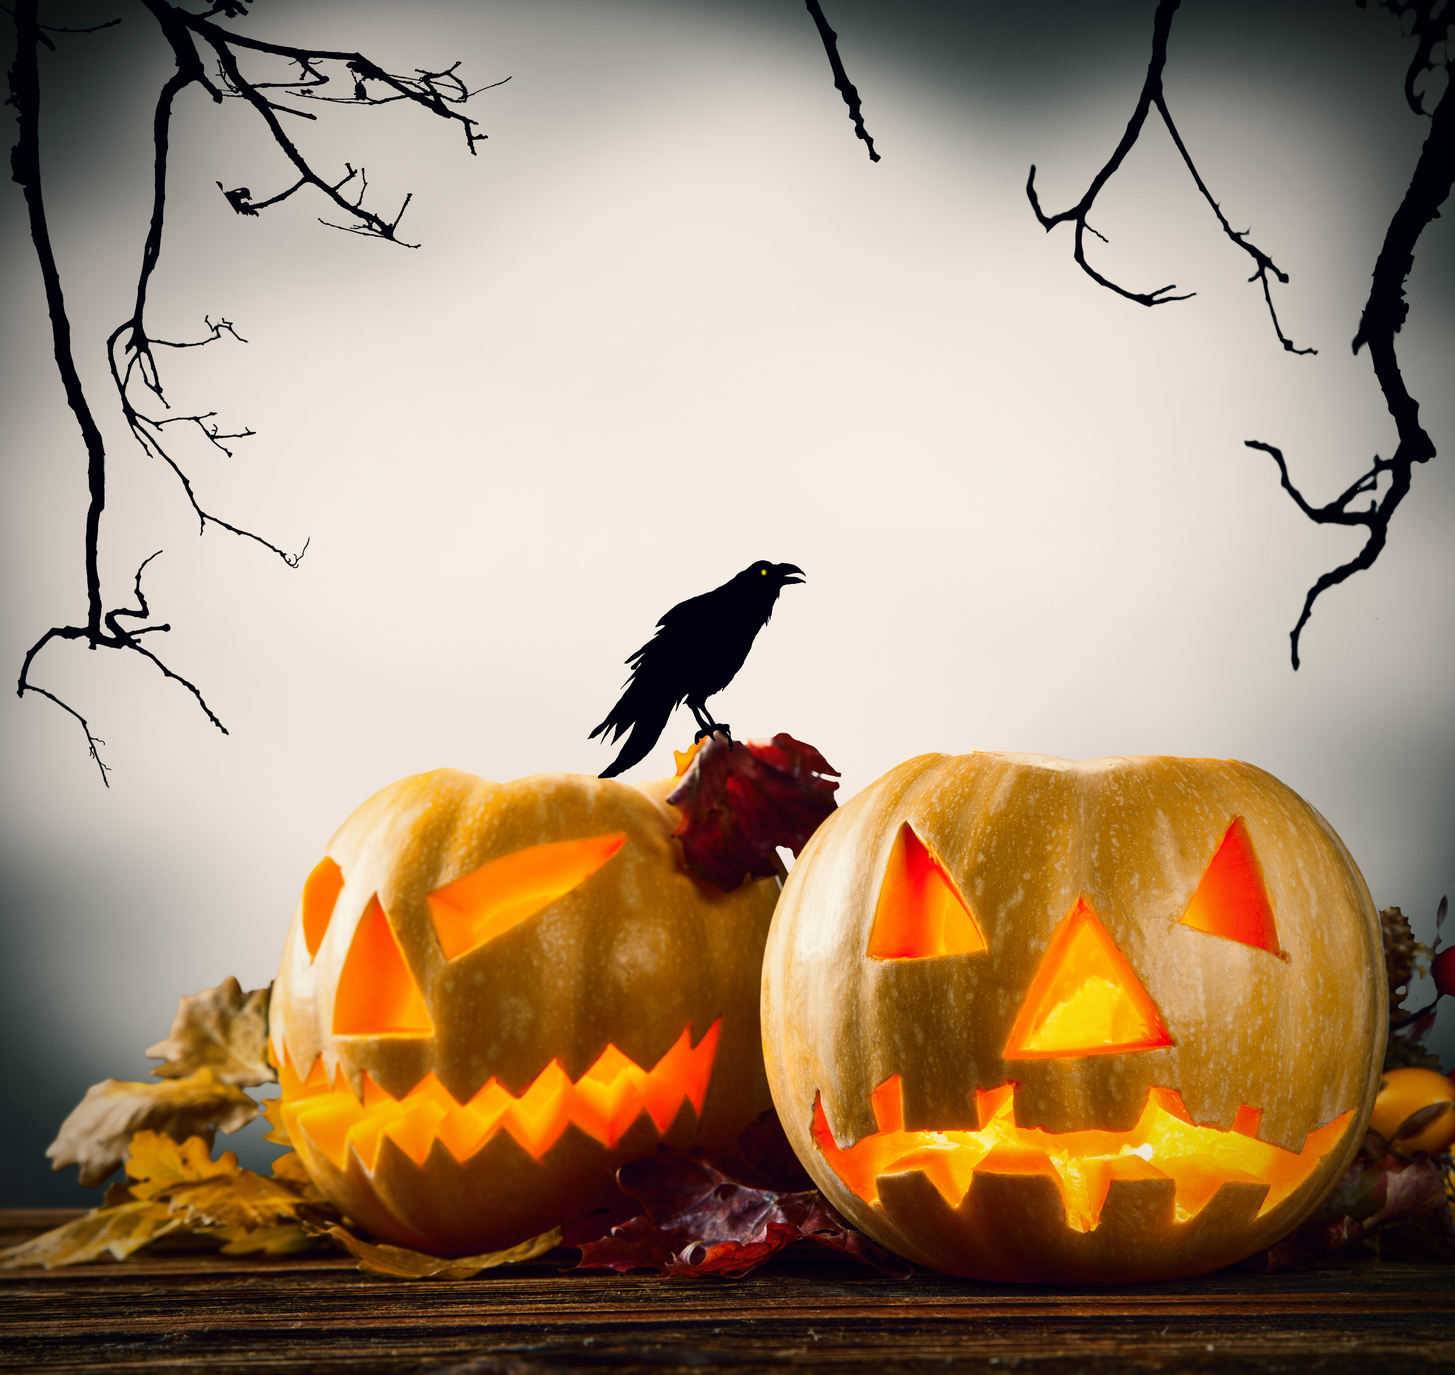 Halloween pumpkins on wood with dark background